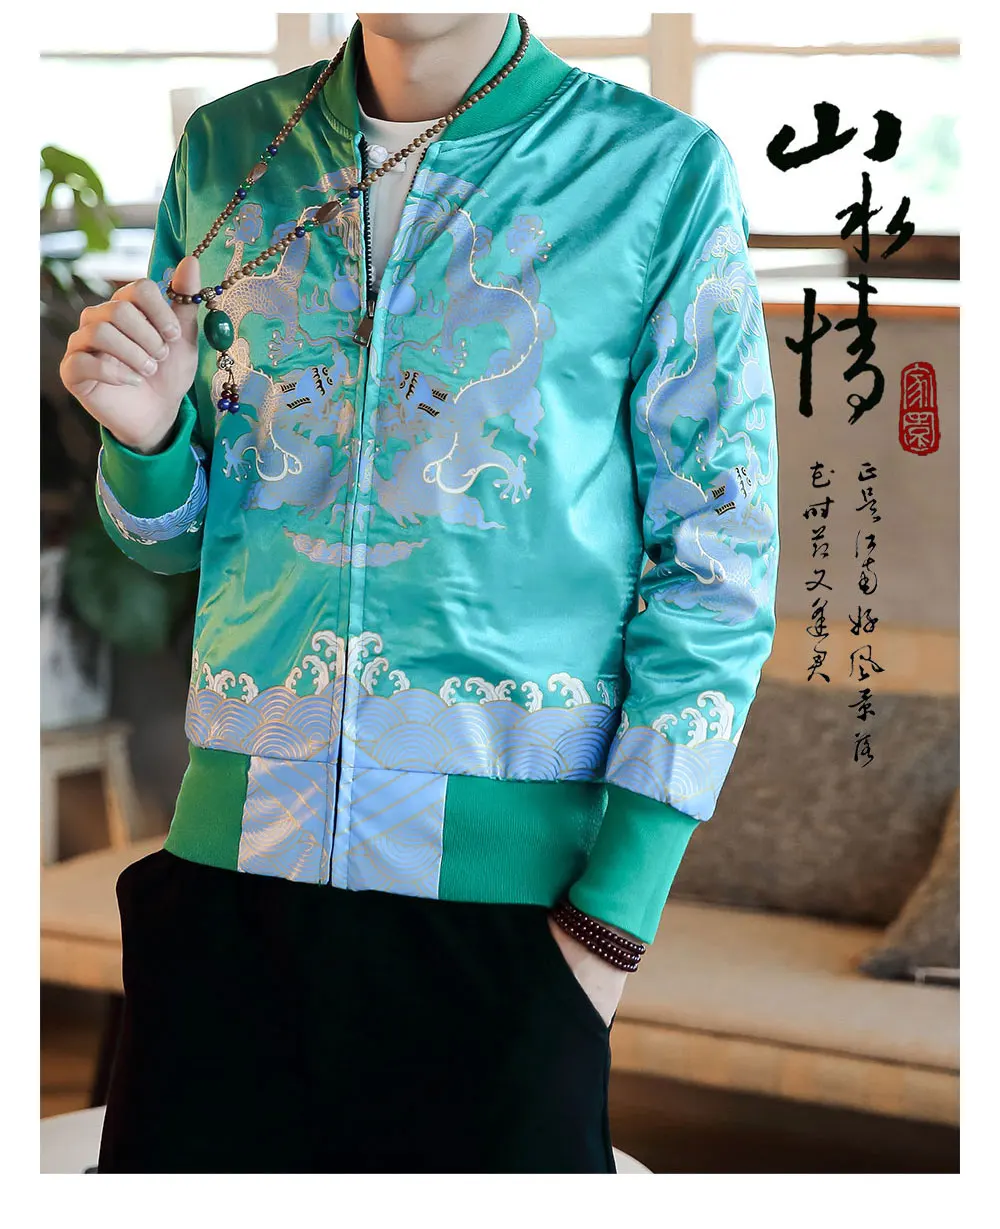 Sinicism Store, мужские куртки-бомберы, мужские уличные куртки и пальто с принтом дракона, мужские Модные ветровки в китайском стиле